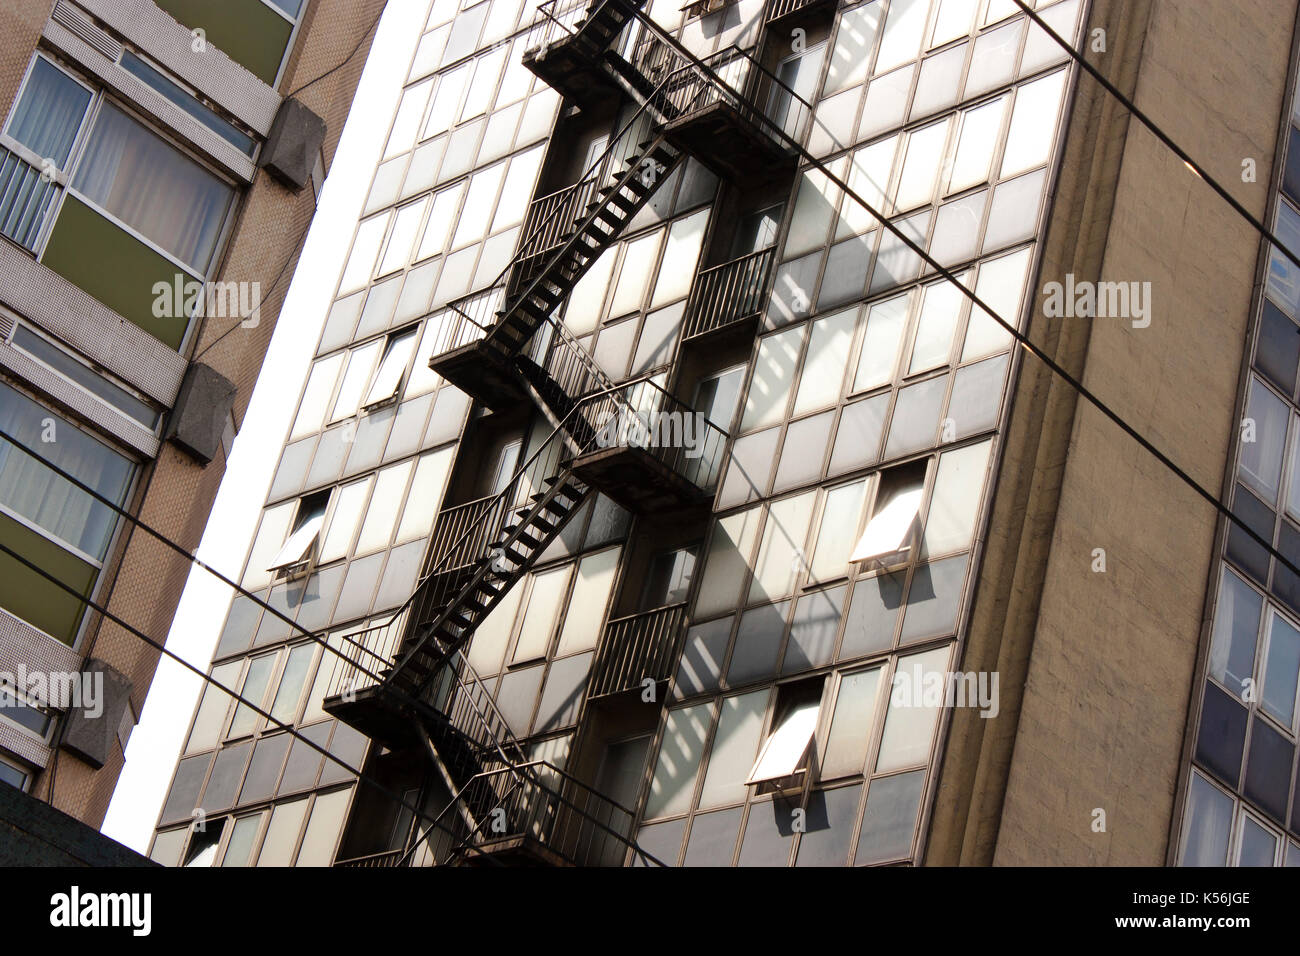 Détail d'une façade de l'immeuble avec sortie de secours externe - escape staircase Banque D'Images